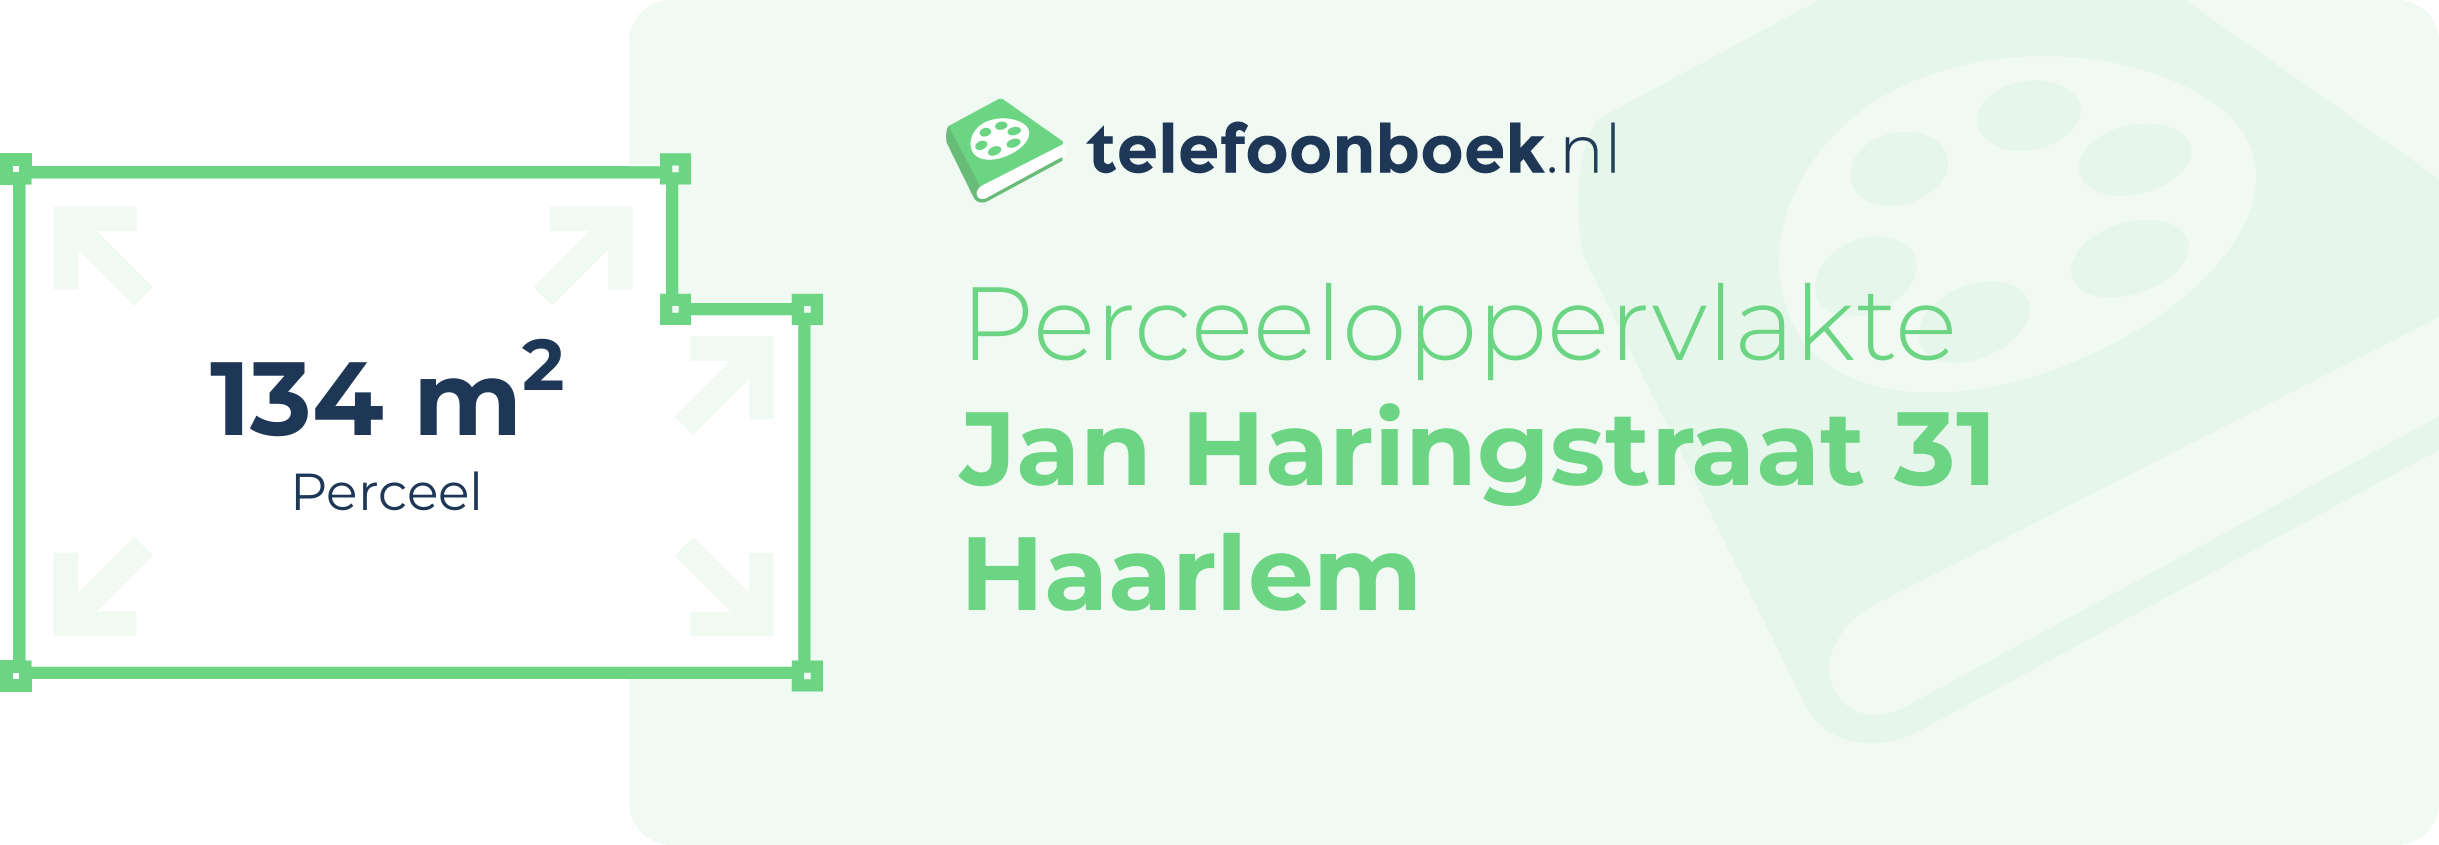 Perceeloppervlakte Jan Haringstraat 31 Haarlem